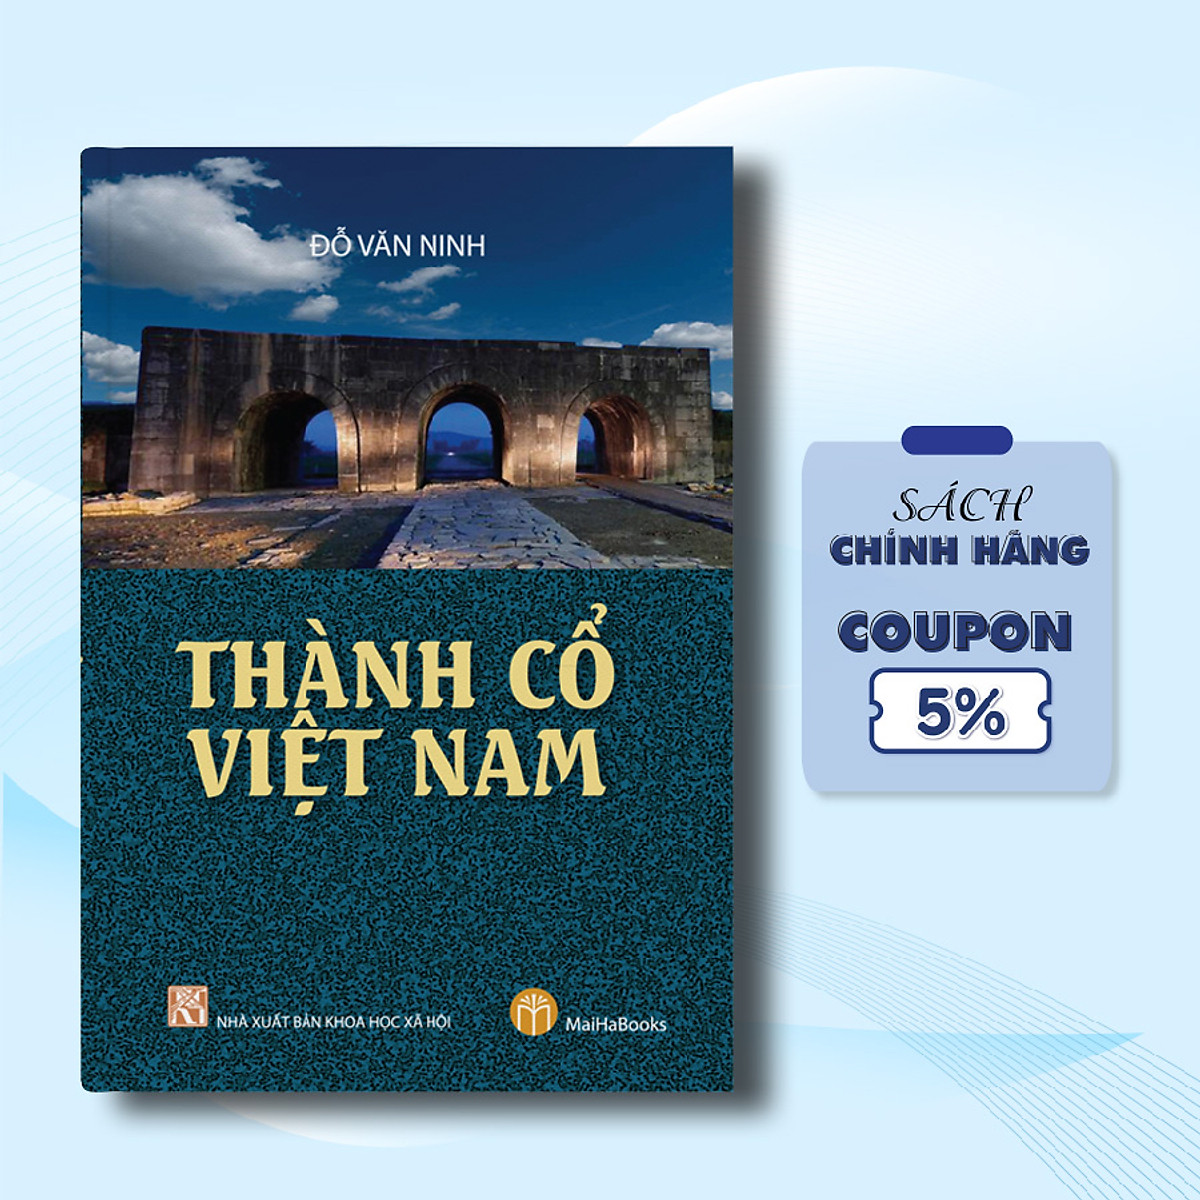 Thành Cổ Việt Nam